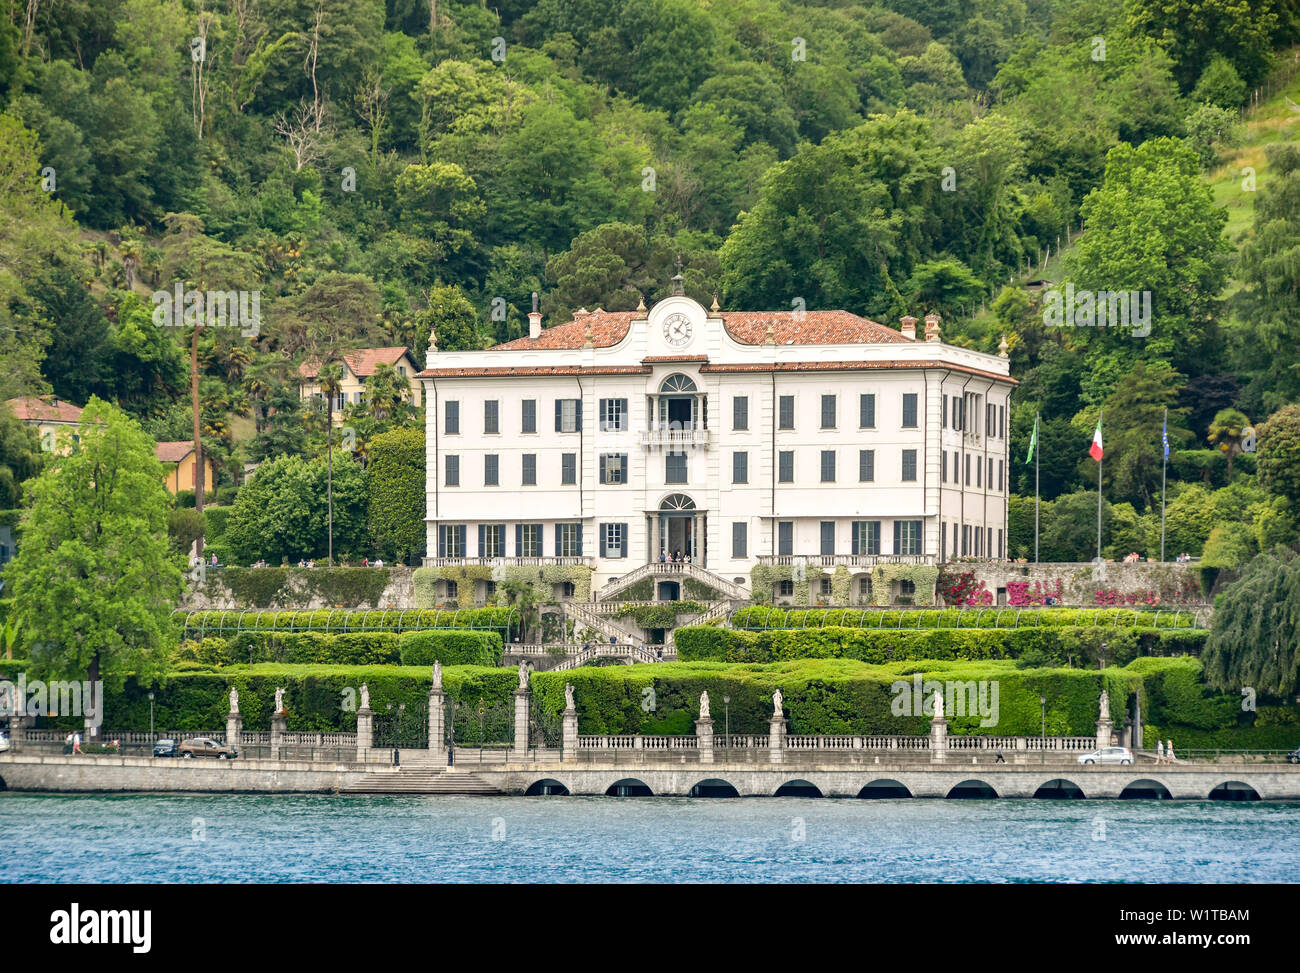 TREMEZZO, Lac de Côme, Italie - Juin 2019 : vue extérieure de l'avant de la Villa Carlotta à Tremezzo, sur le lac de Côme. Banque D'Images